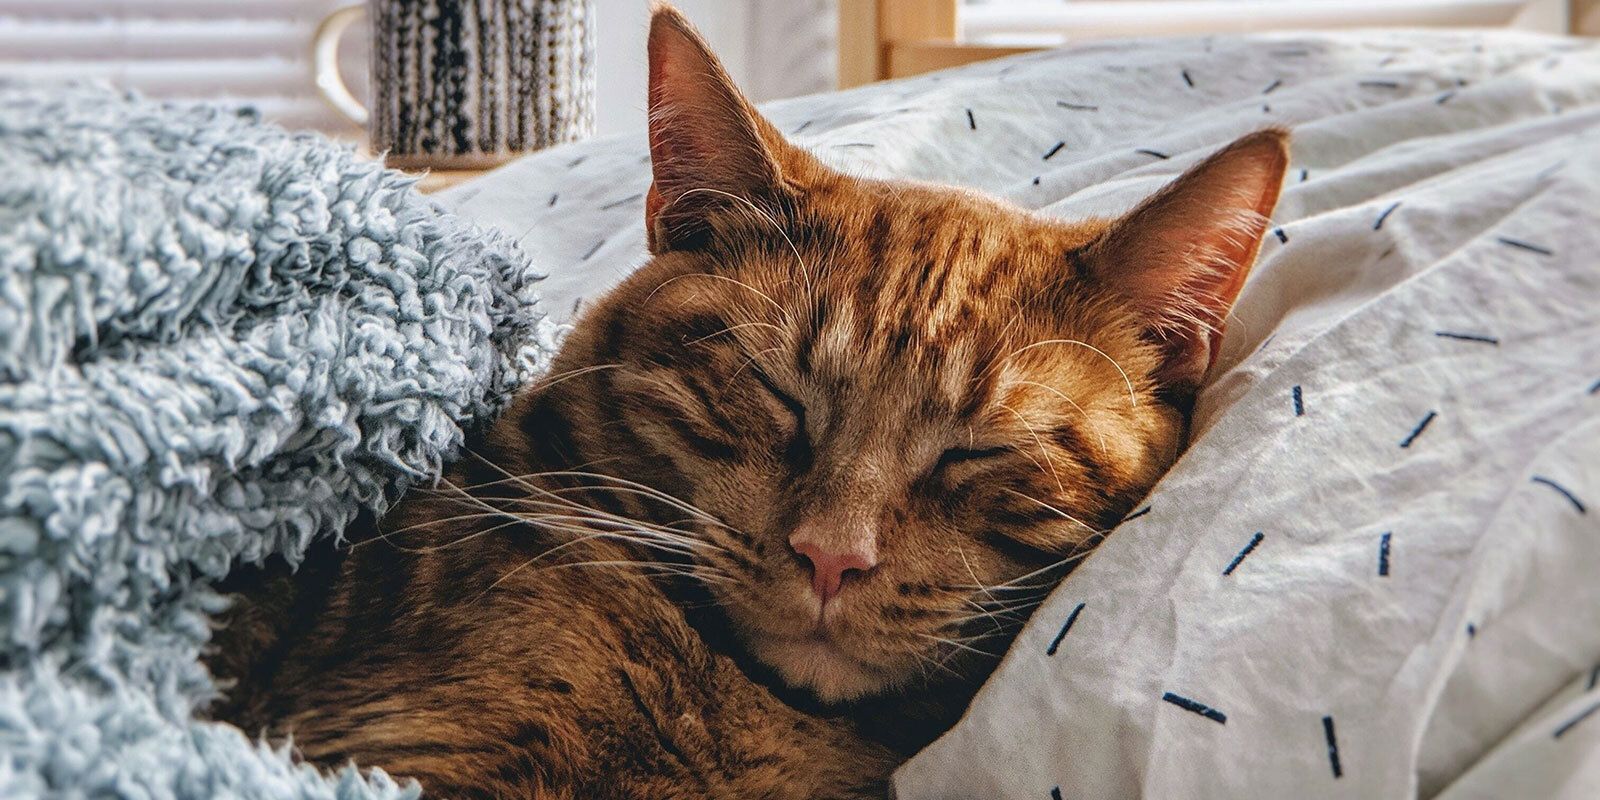 Sleepy orange cat.